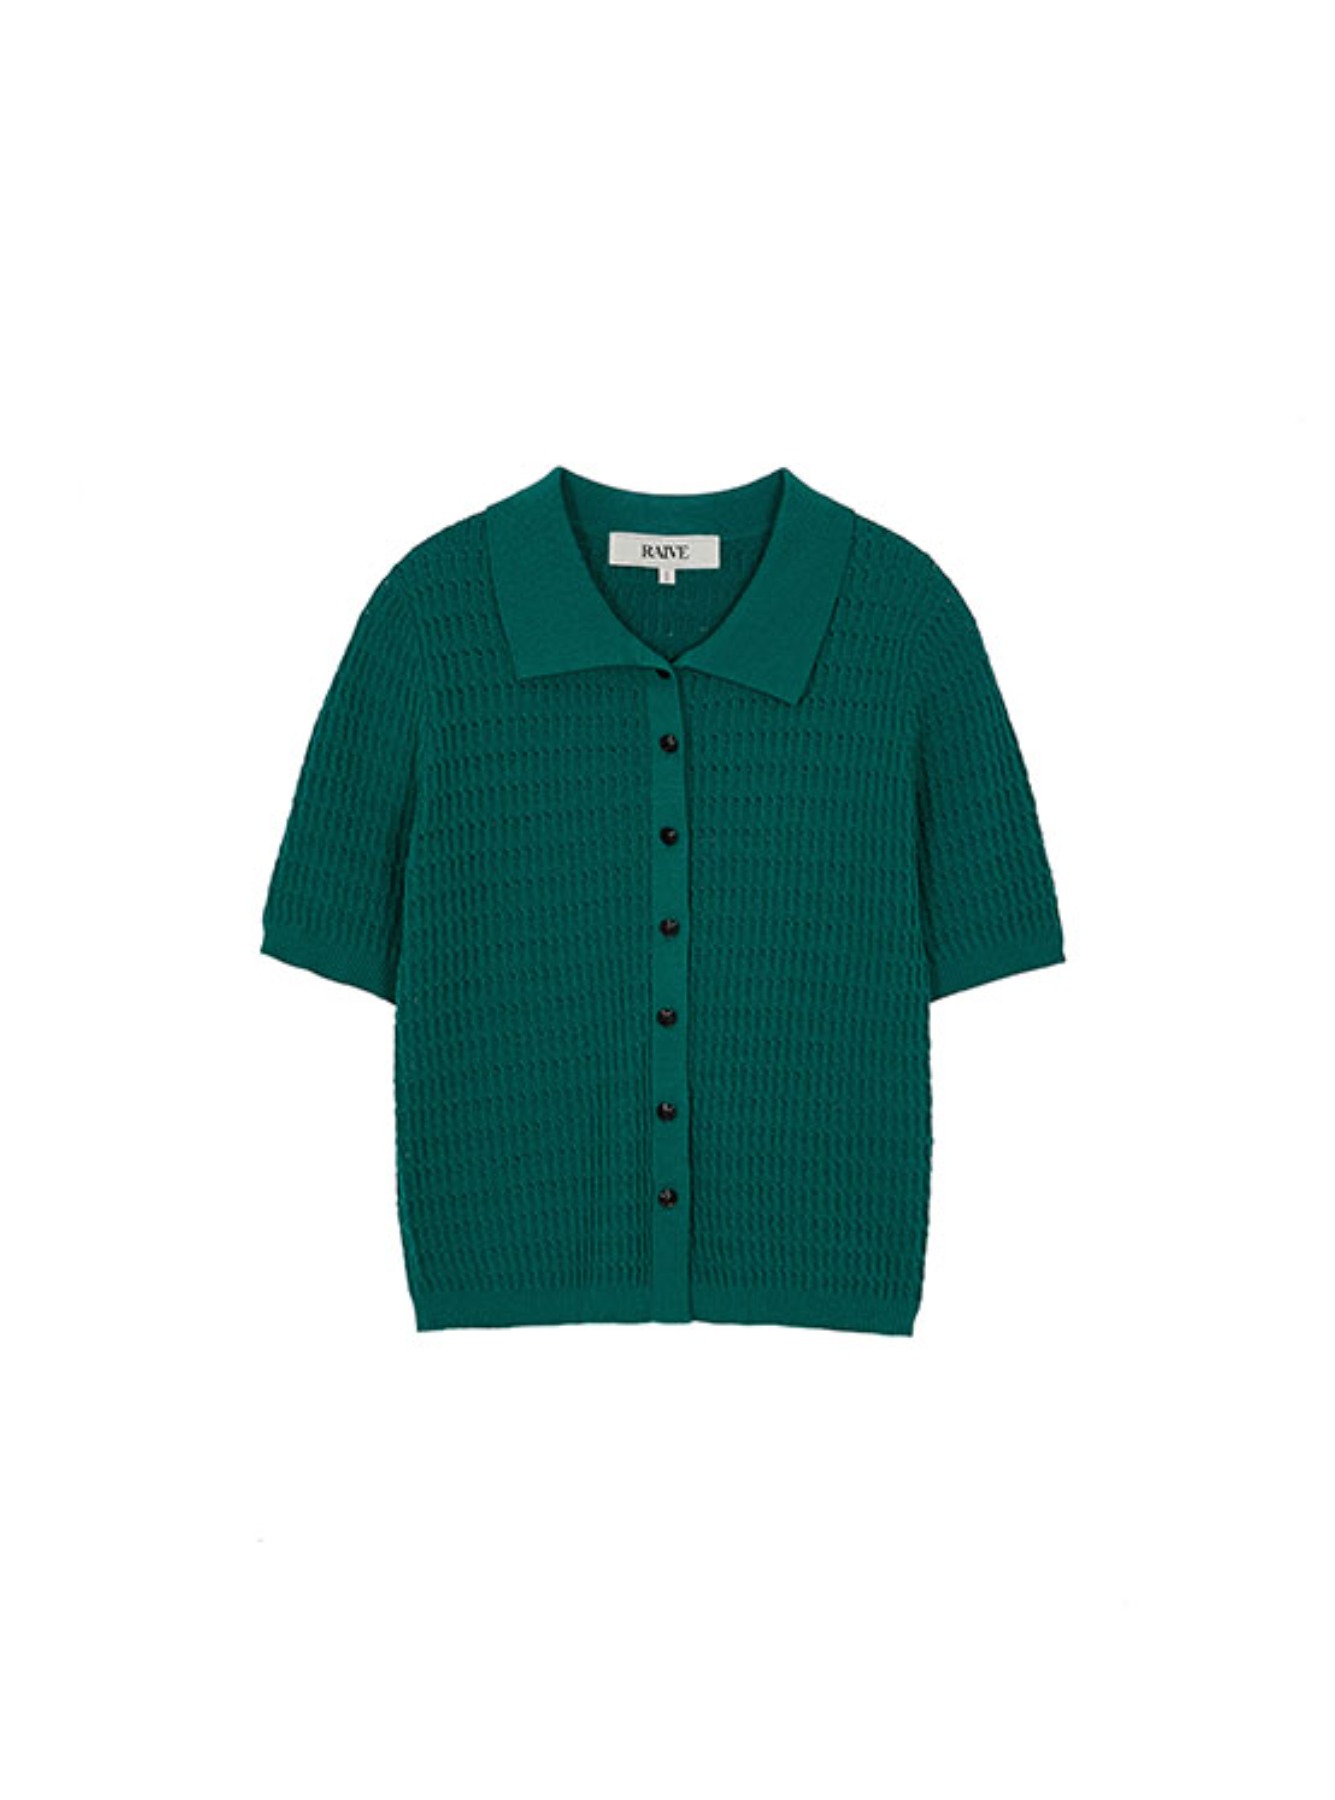 Collar Shirt knit Top in Green VK2MP148-32